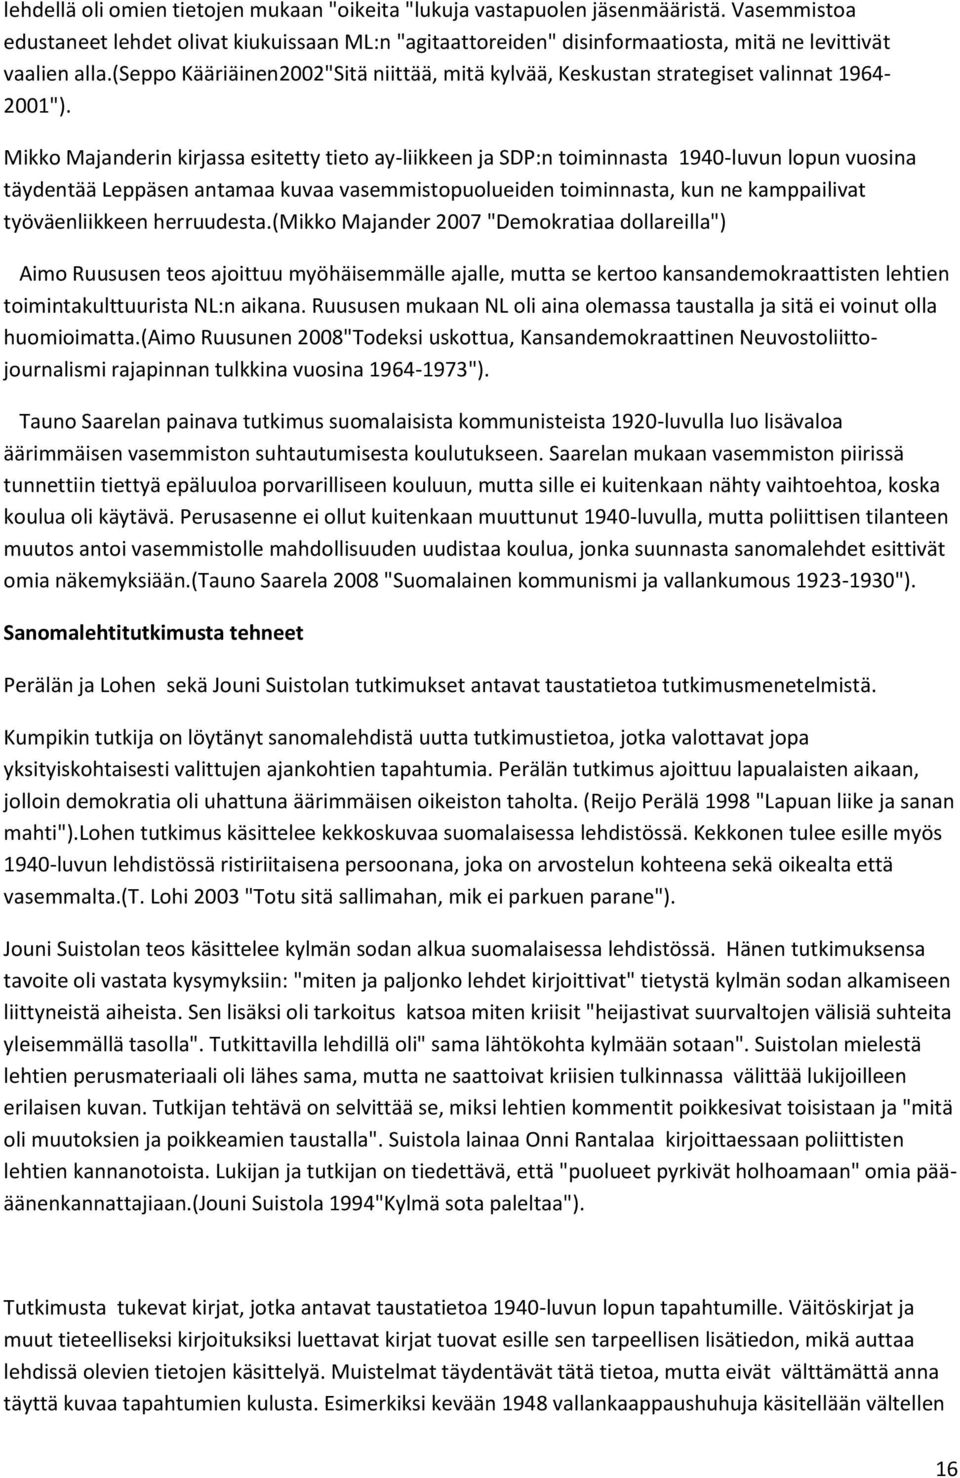 (seppo Kääriäinen2002"Sitä niittää, mitä kylvää, Keskustan strategiset valinnat 1964-2001").